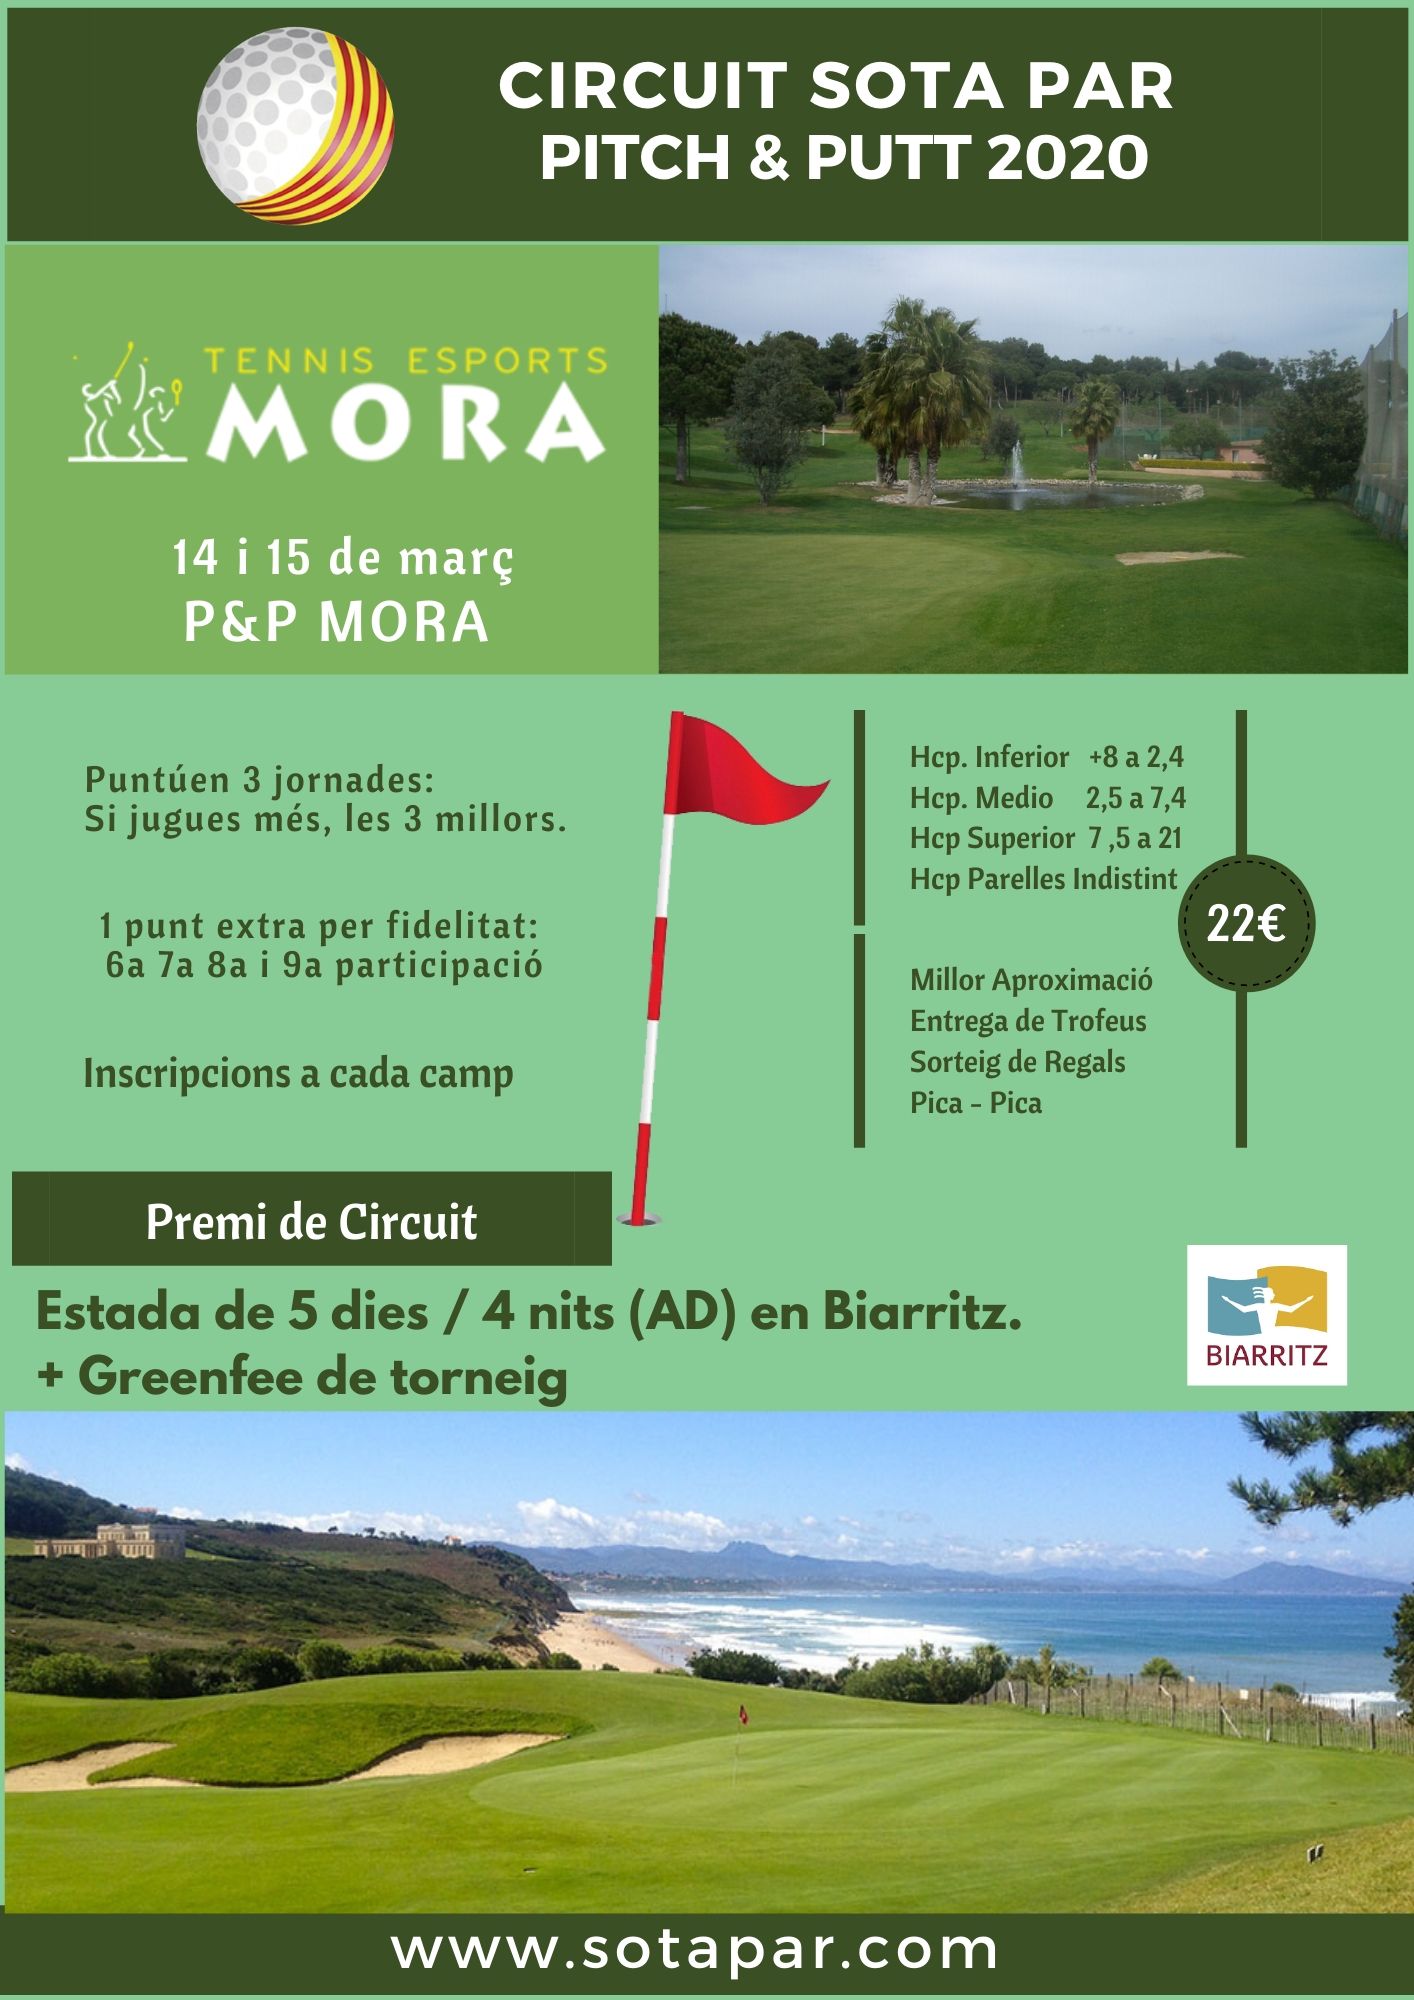 Próxima jornada del Sota Par Biarritz: Tennis Mora P&P